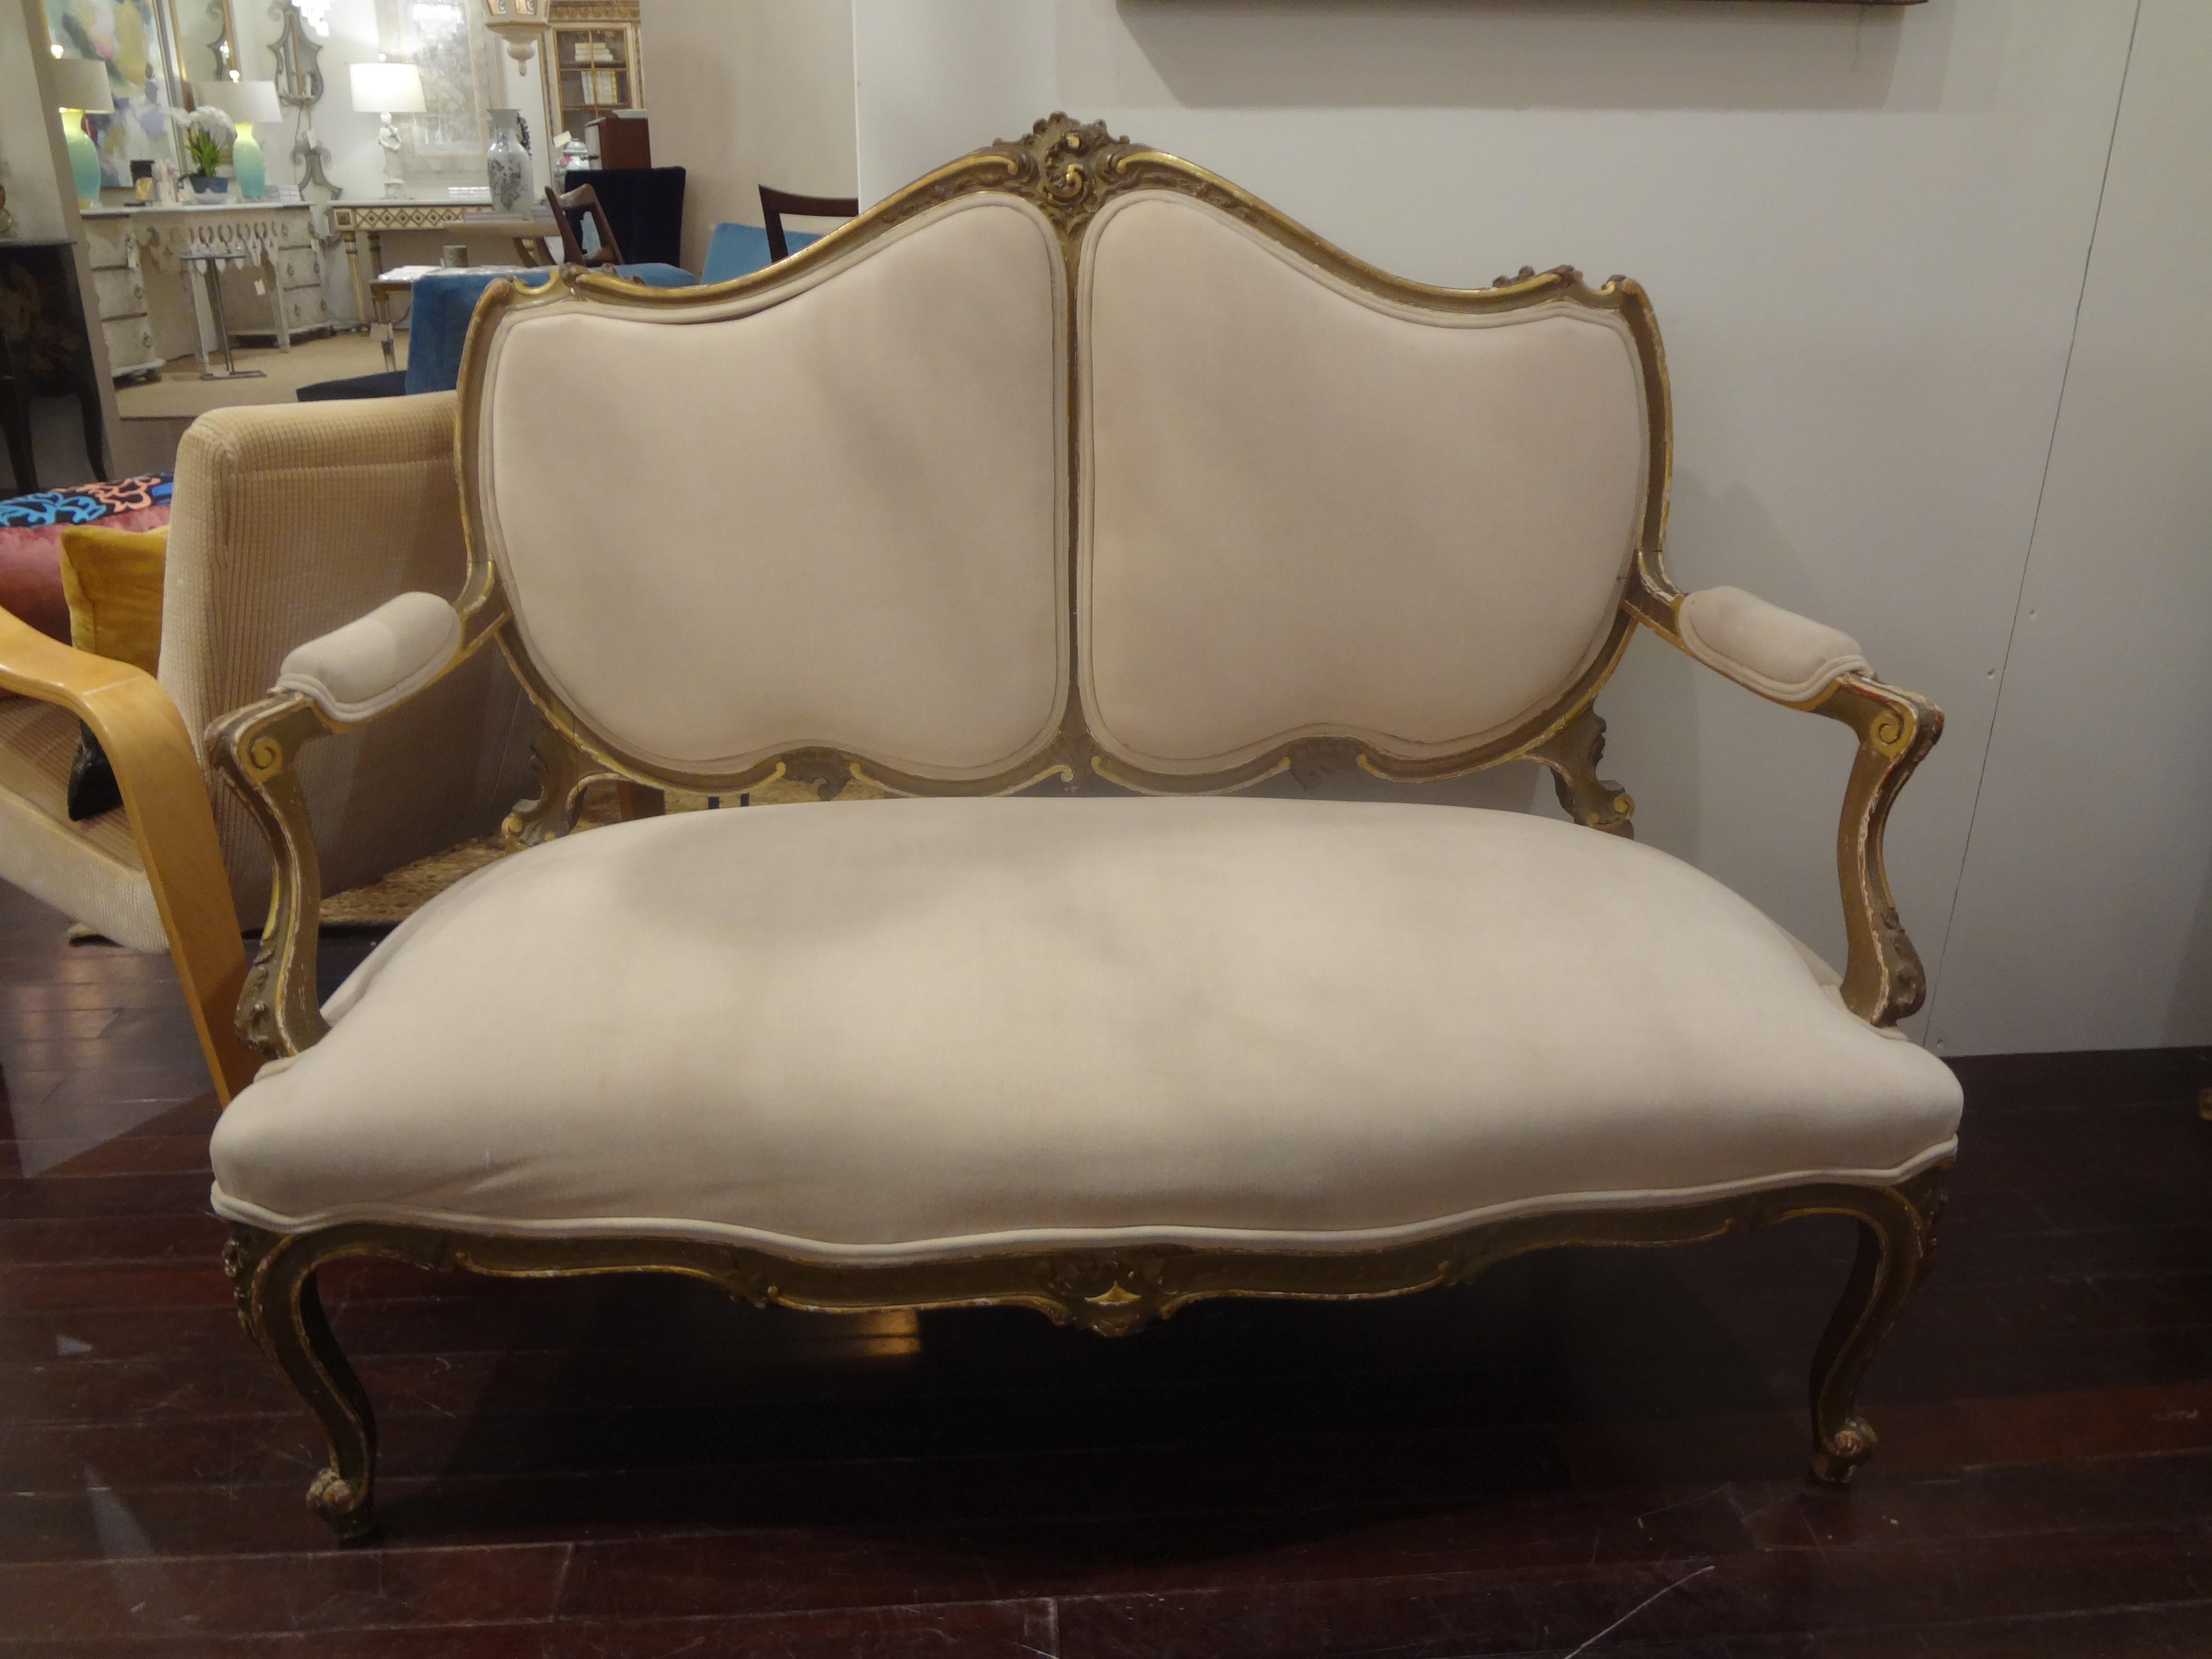 Ravissante banquette, canapé, canapé ou canapé en bois doré de style Louis XV du XIXe siècle en Italie. Ce canapé ancien conviendrait parfaitement à une entrée, un salon, un dressing ou une chambre à coucher. Cette élégante causeuse italienne en